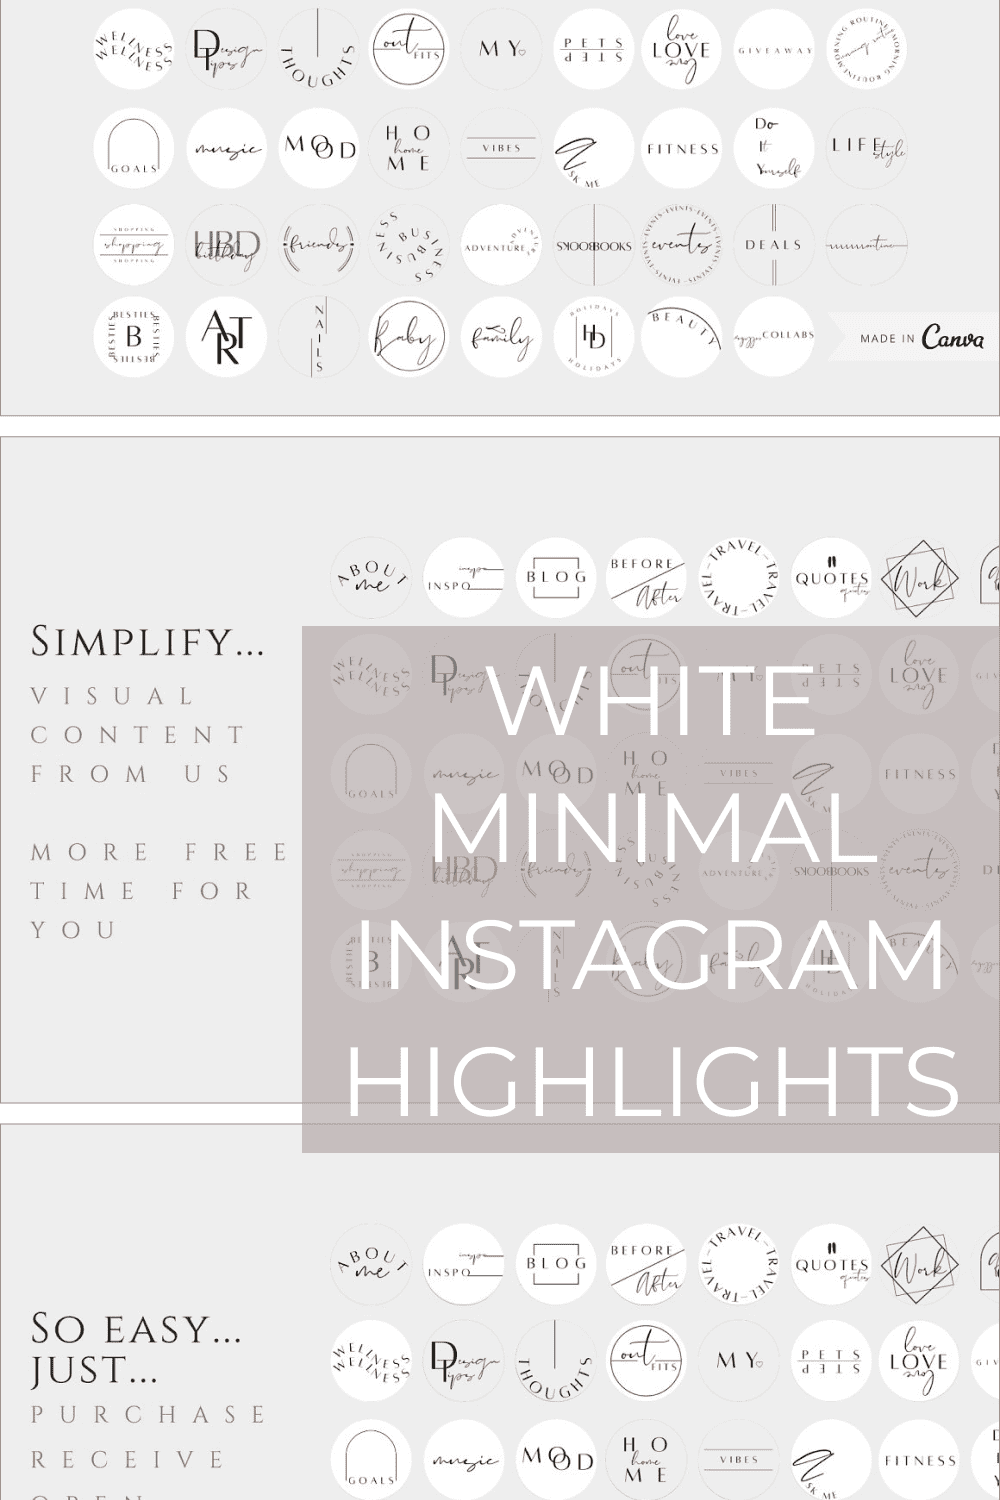 White Minimal Instagram Highlights - Pinterest.